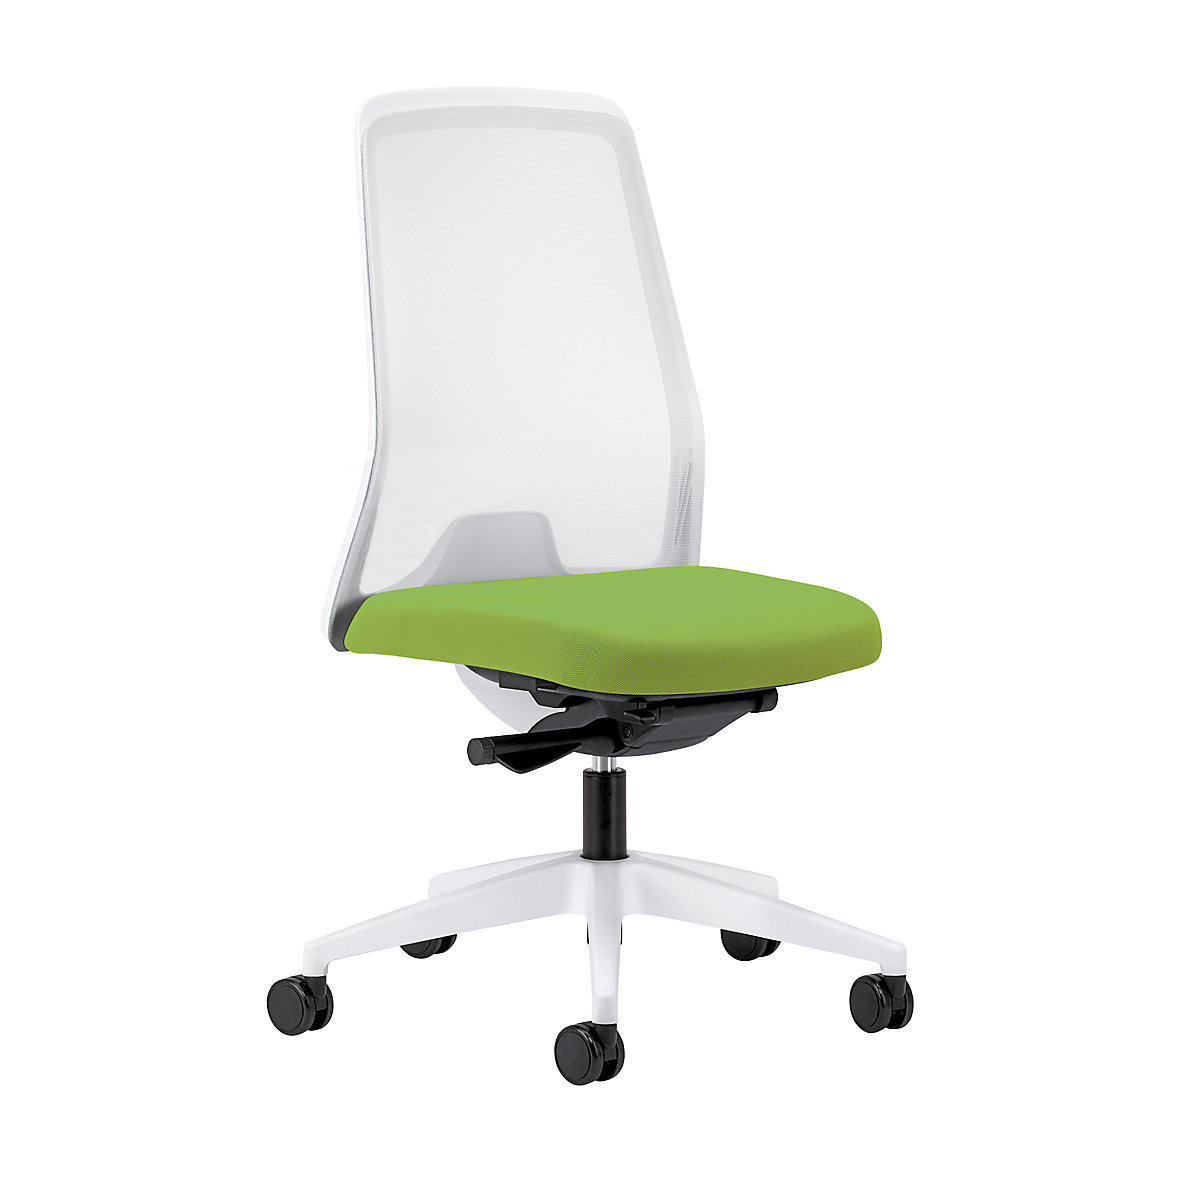 Udoben vrtljiv stol EVERY, belo mrežasto naslonjalo za hrbet – interstuhl, belo ogrodje, trda kolesa, rumeno zelena, globina sedeža 430 mm-1